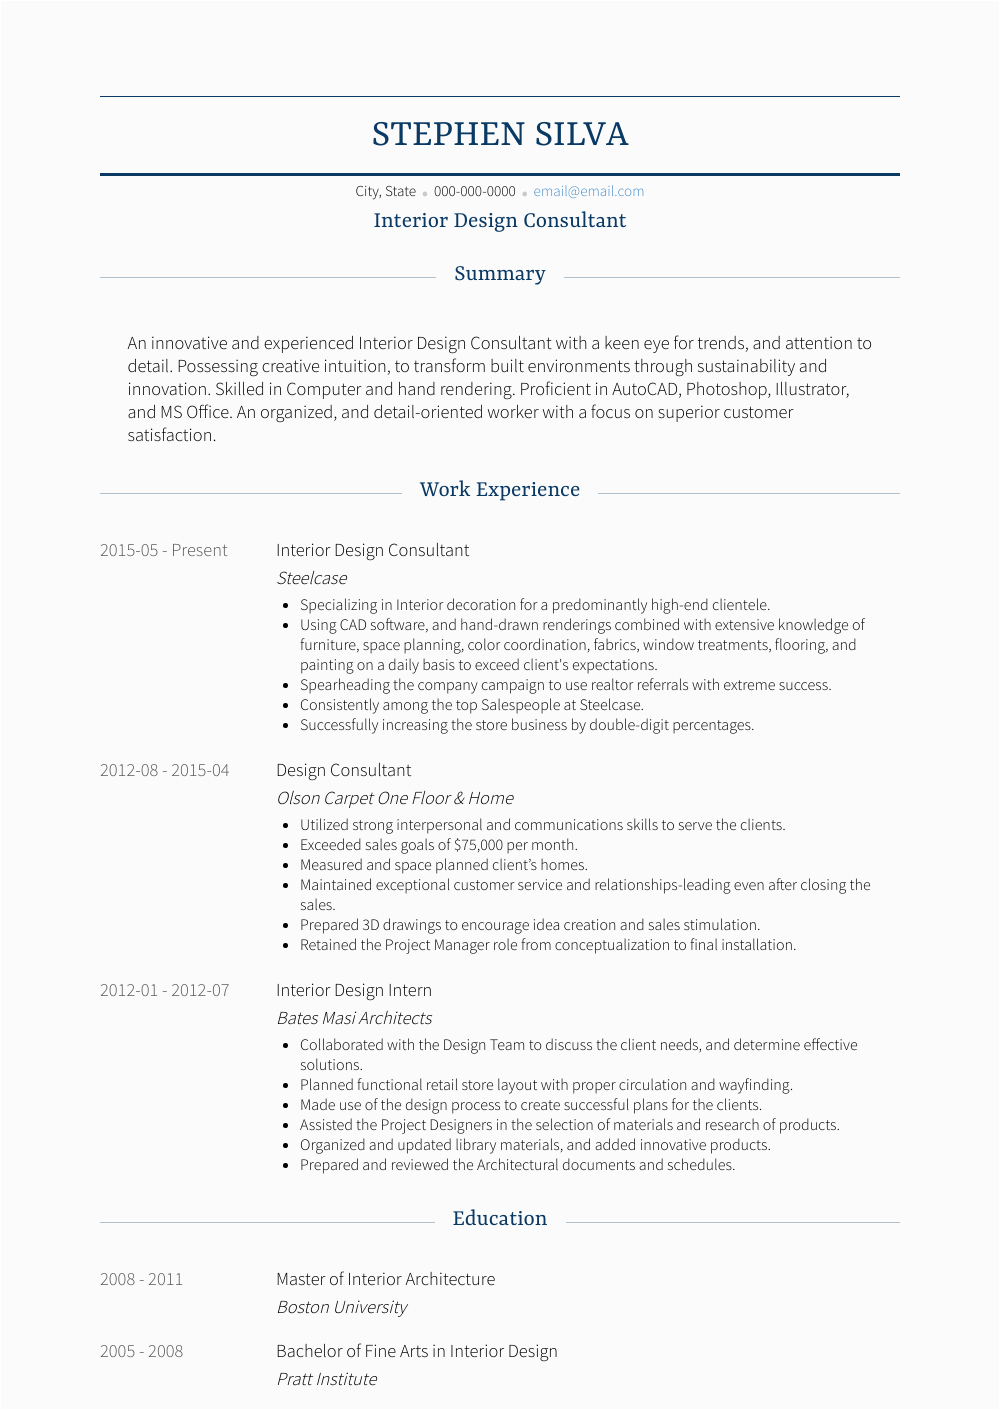 Sample Resume for Interior Design Consultant Design Consultant Resume Samples 1 Resource for Templates & Skills